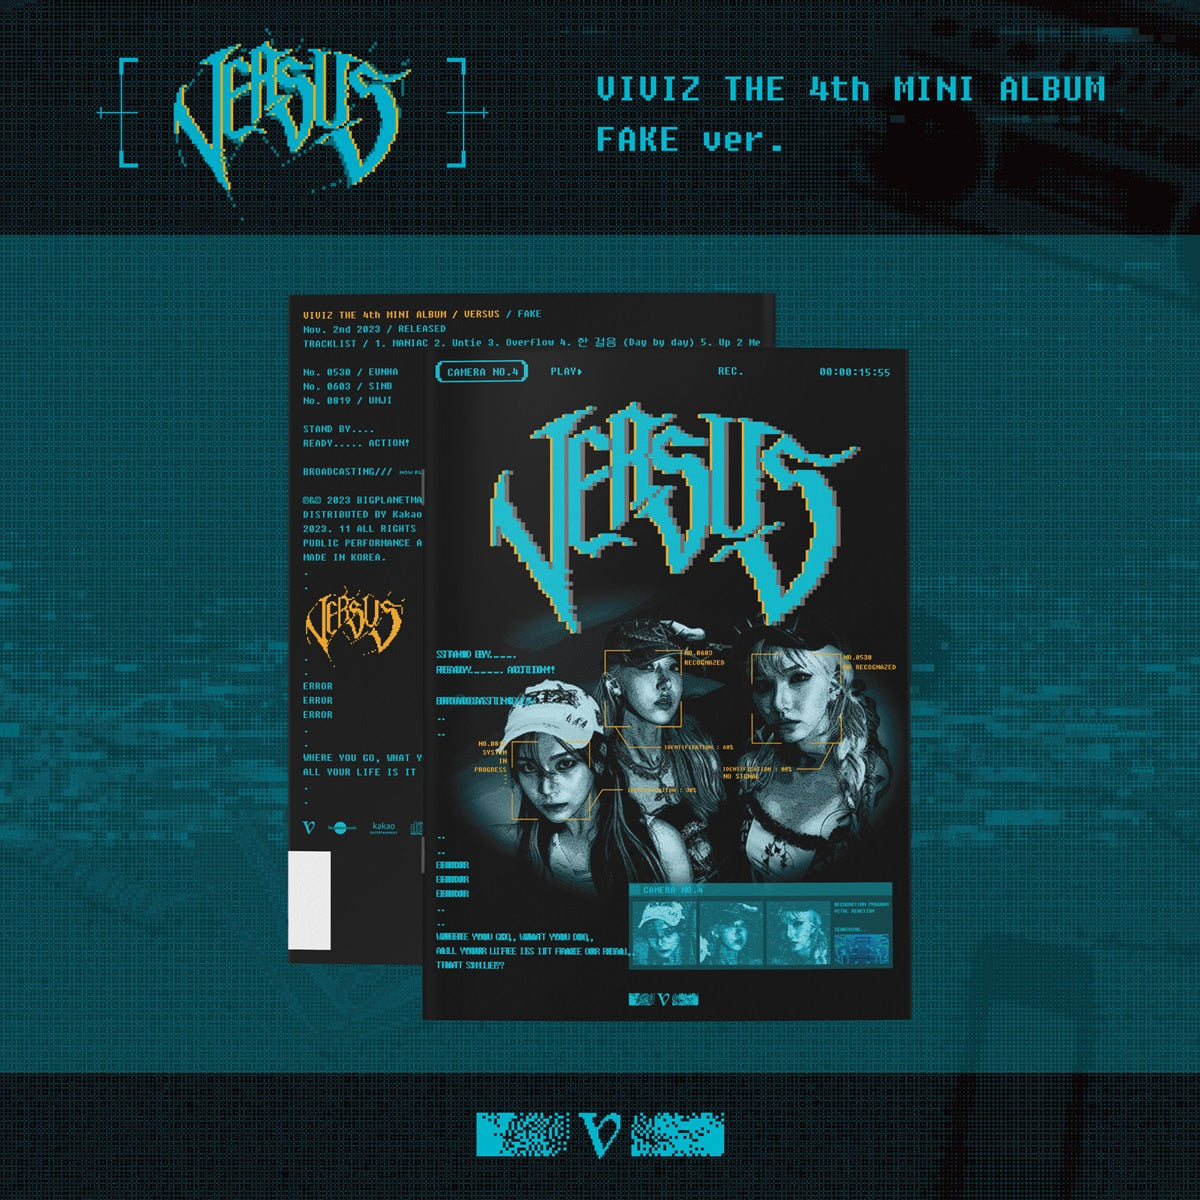 VIVIZ 4TH MINI ALBUM 'VERSUS' FAKE VERSION COVER